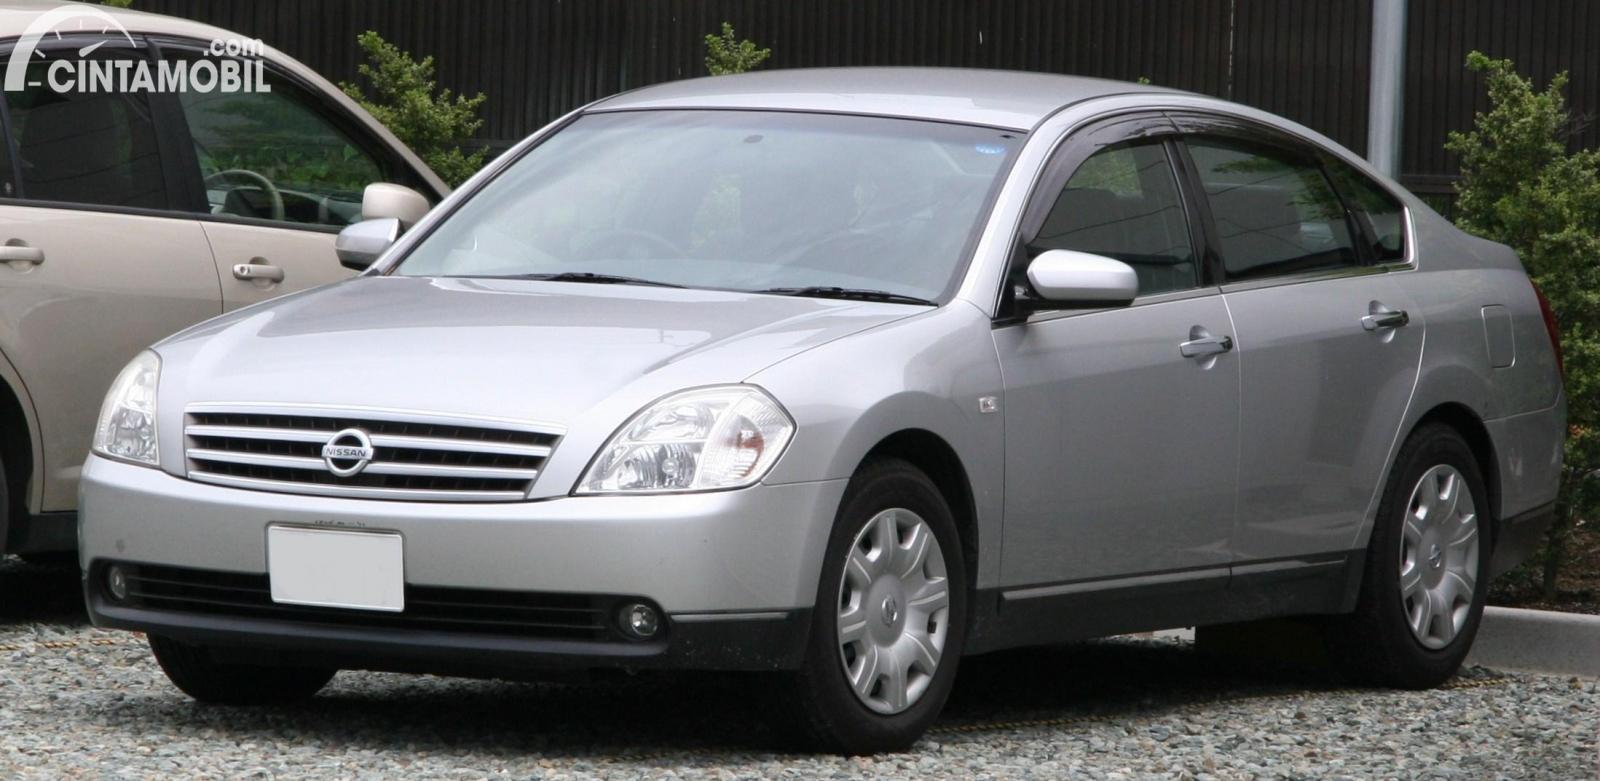 Gambaar menunjukkan generasi pertama dari Nissan Teana